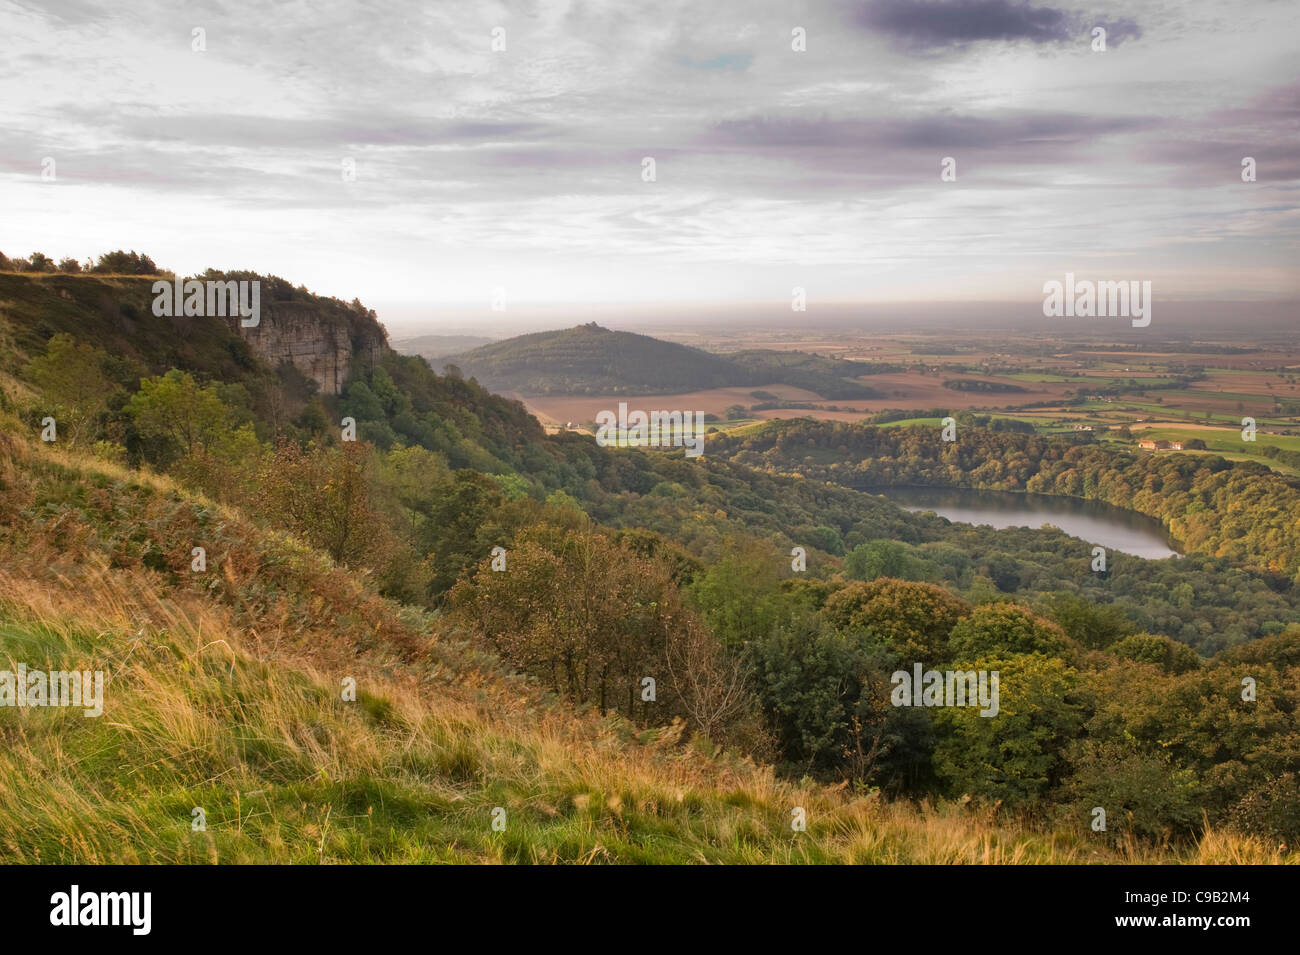 Landschaftlich schöne Fern- Sicht über den See Gormire, Haube Hill, Whitestone Cliff & Landschaft Sonnenaufgang - Sutton Bank, North Yorkshire, England, UK. Stockfoto